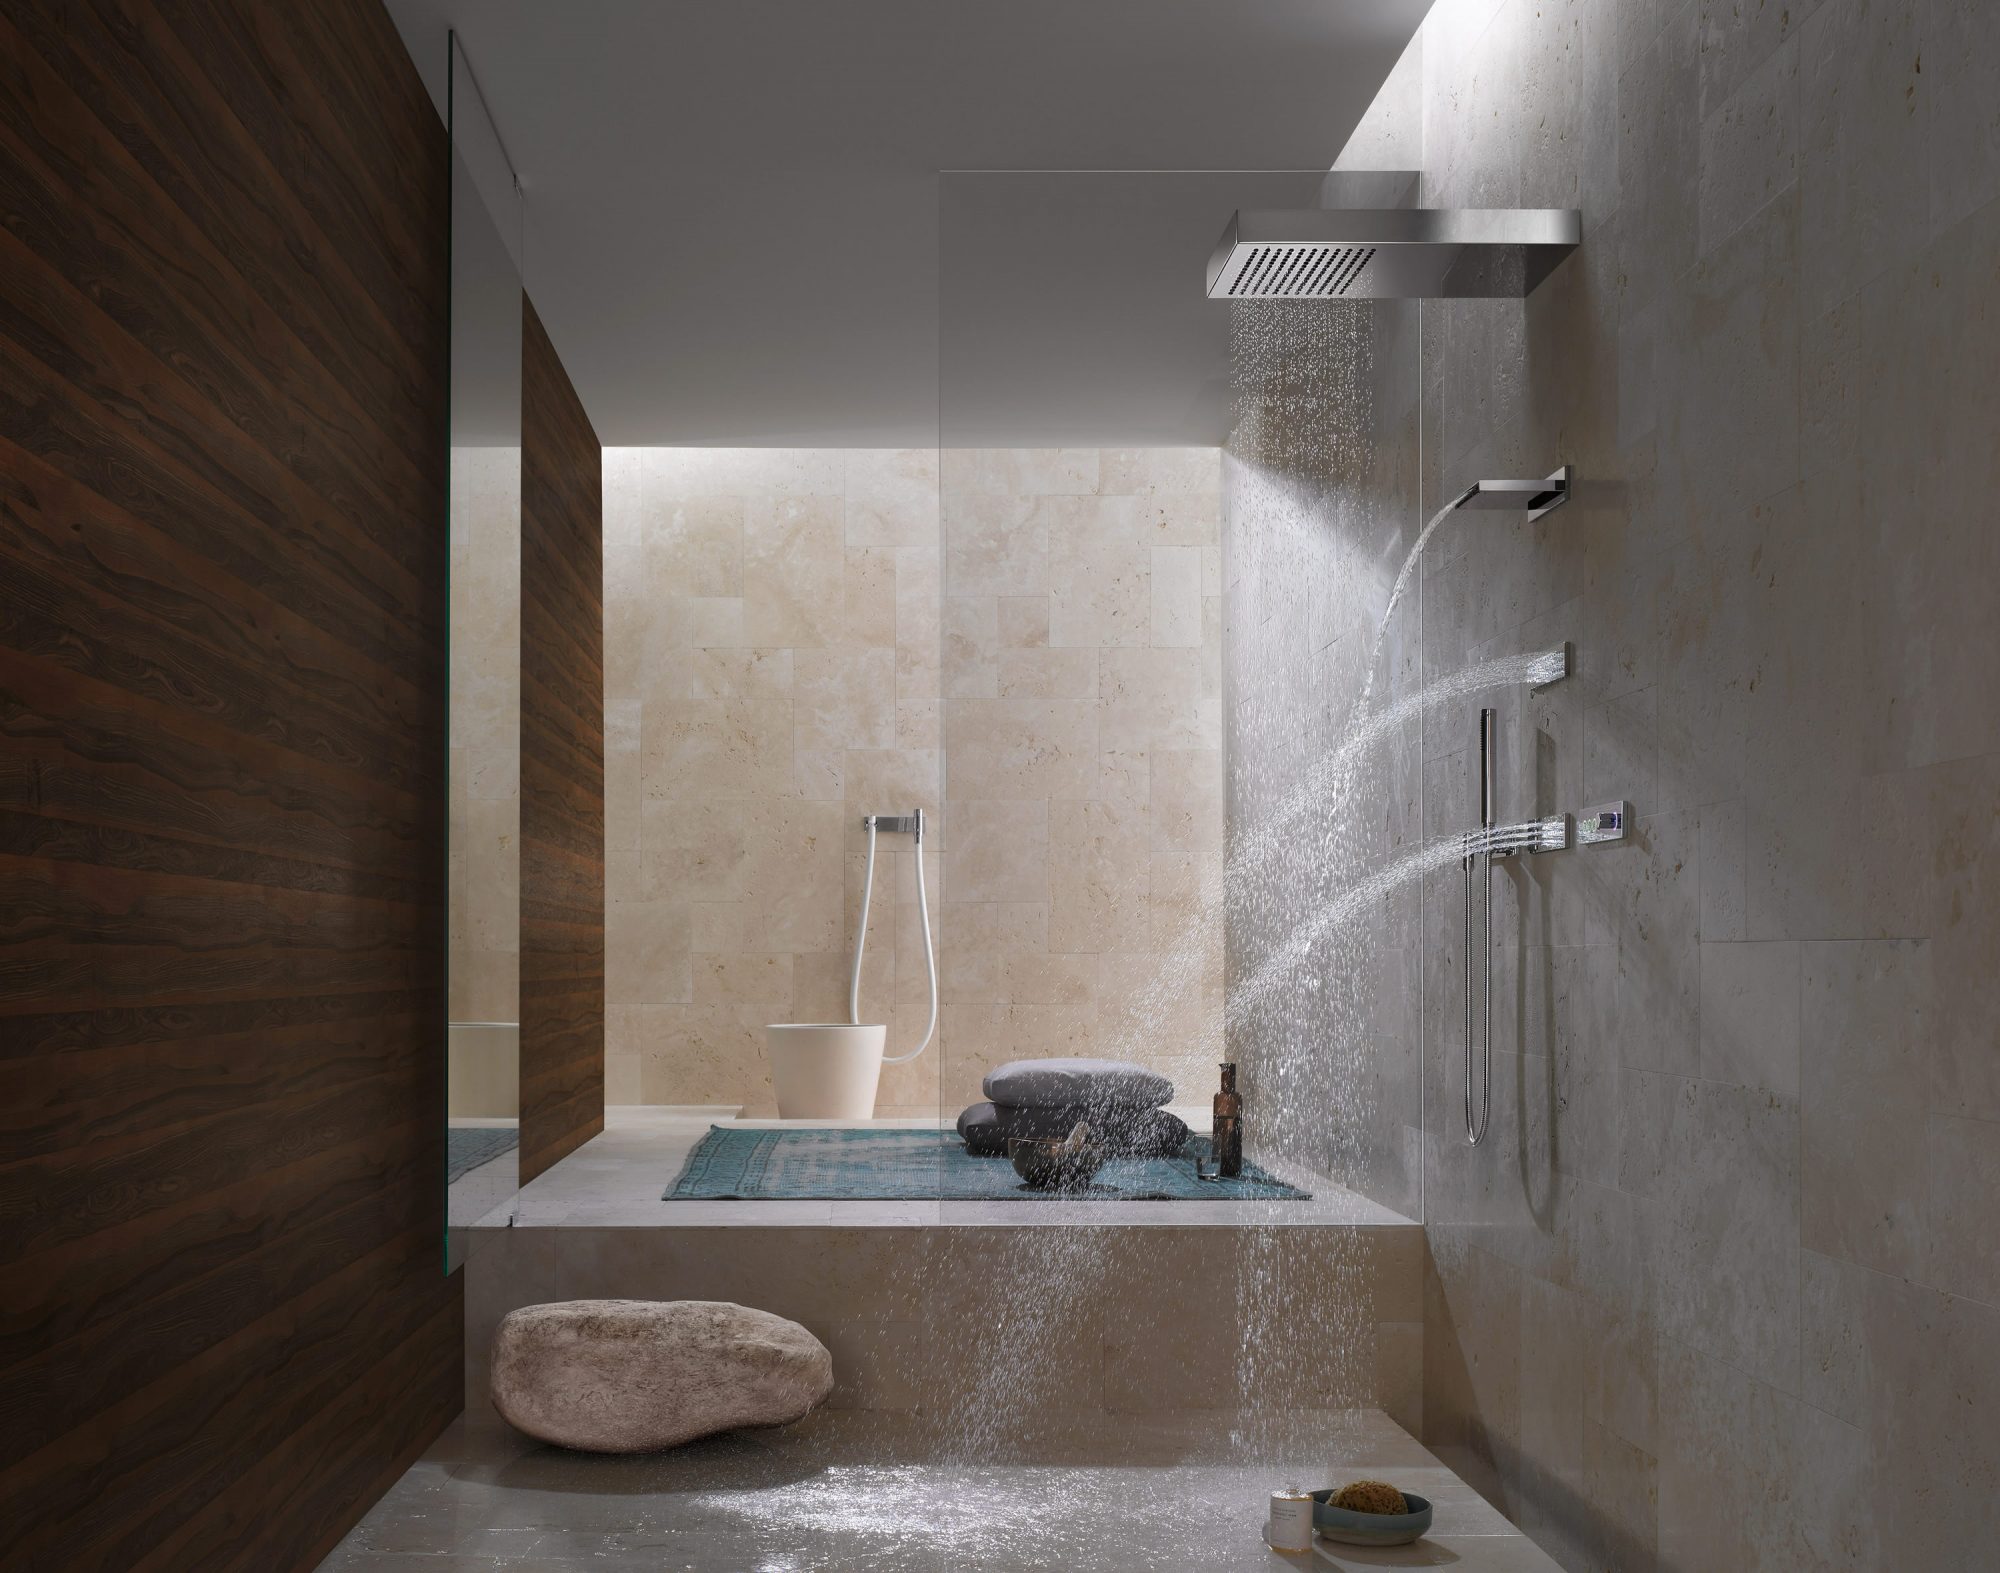 Shower douche. Ванная комната с тропическим душем. Интерьер ванной комнаты с тропическим душем.